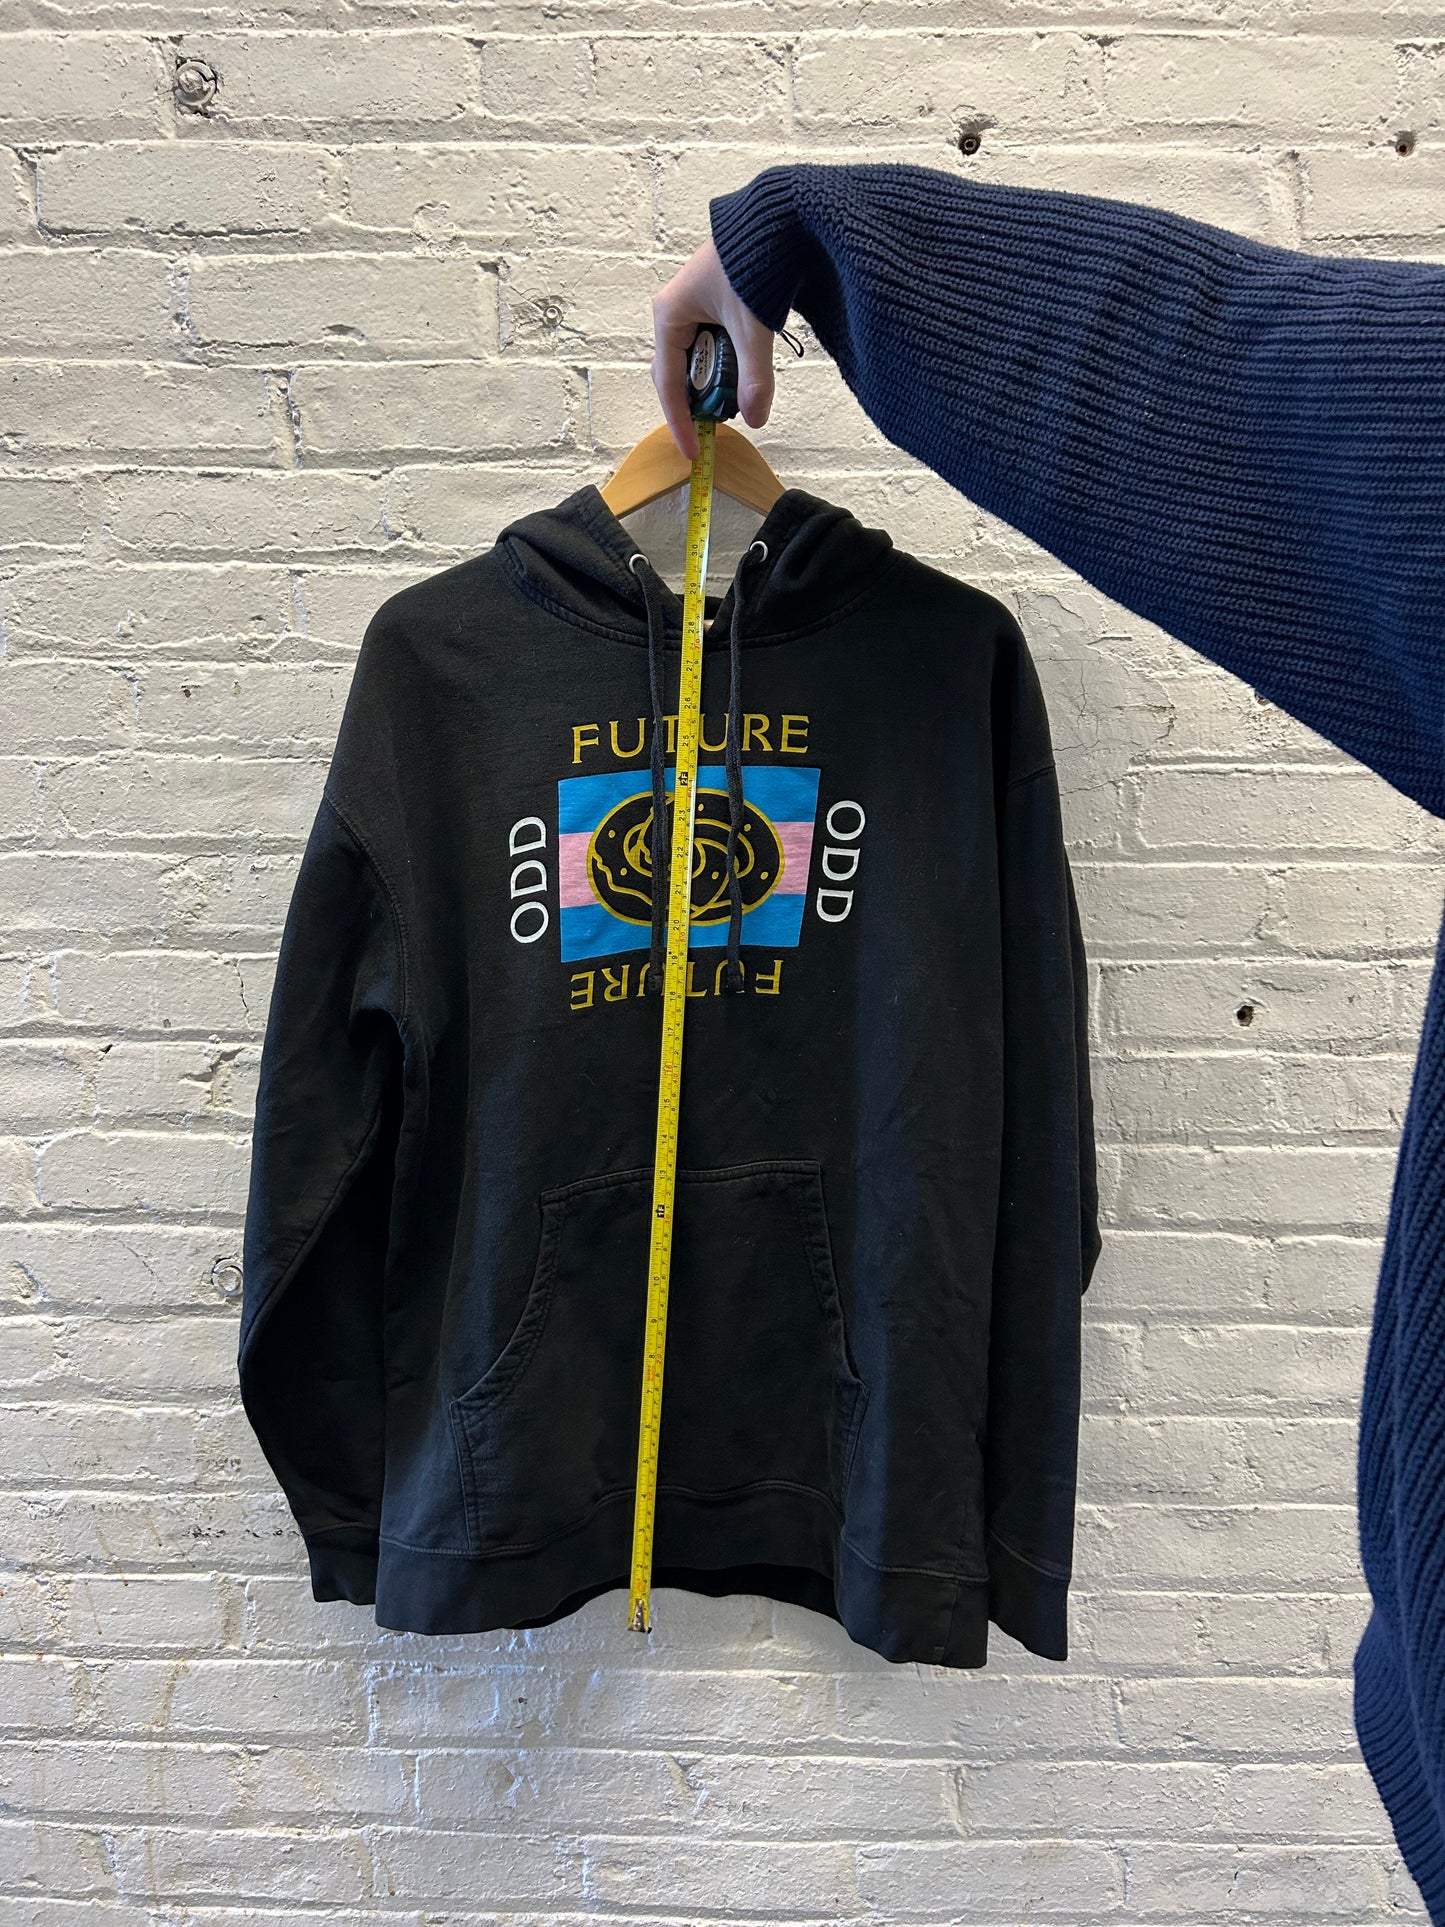 Odd Future Sweatshirt - XL